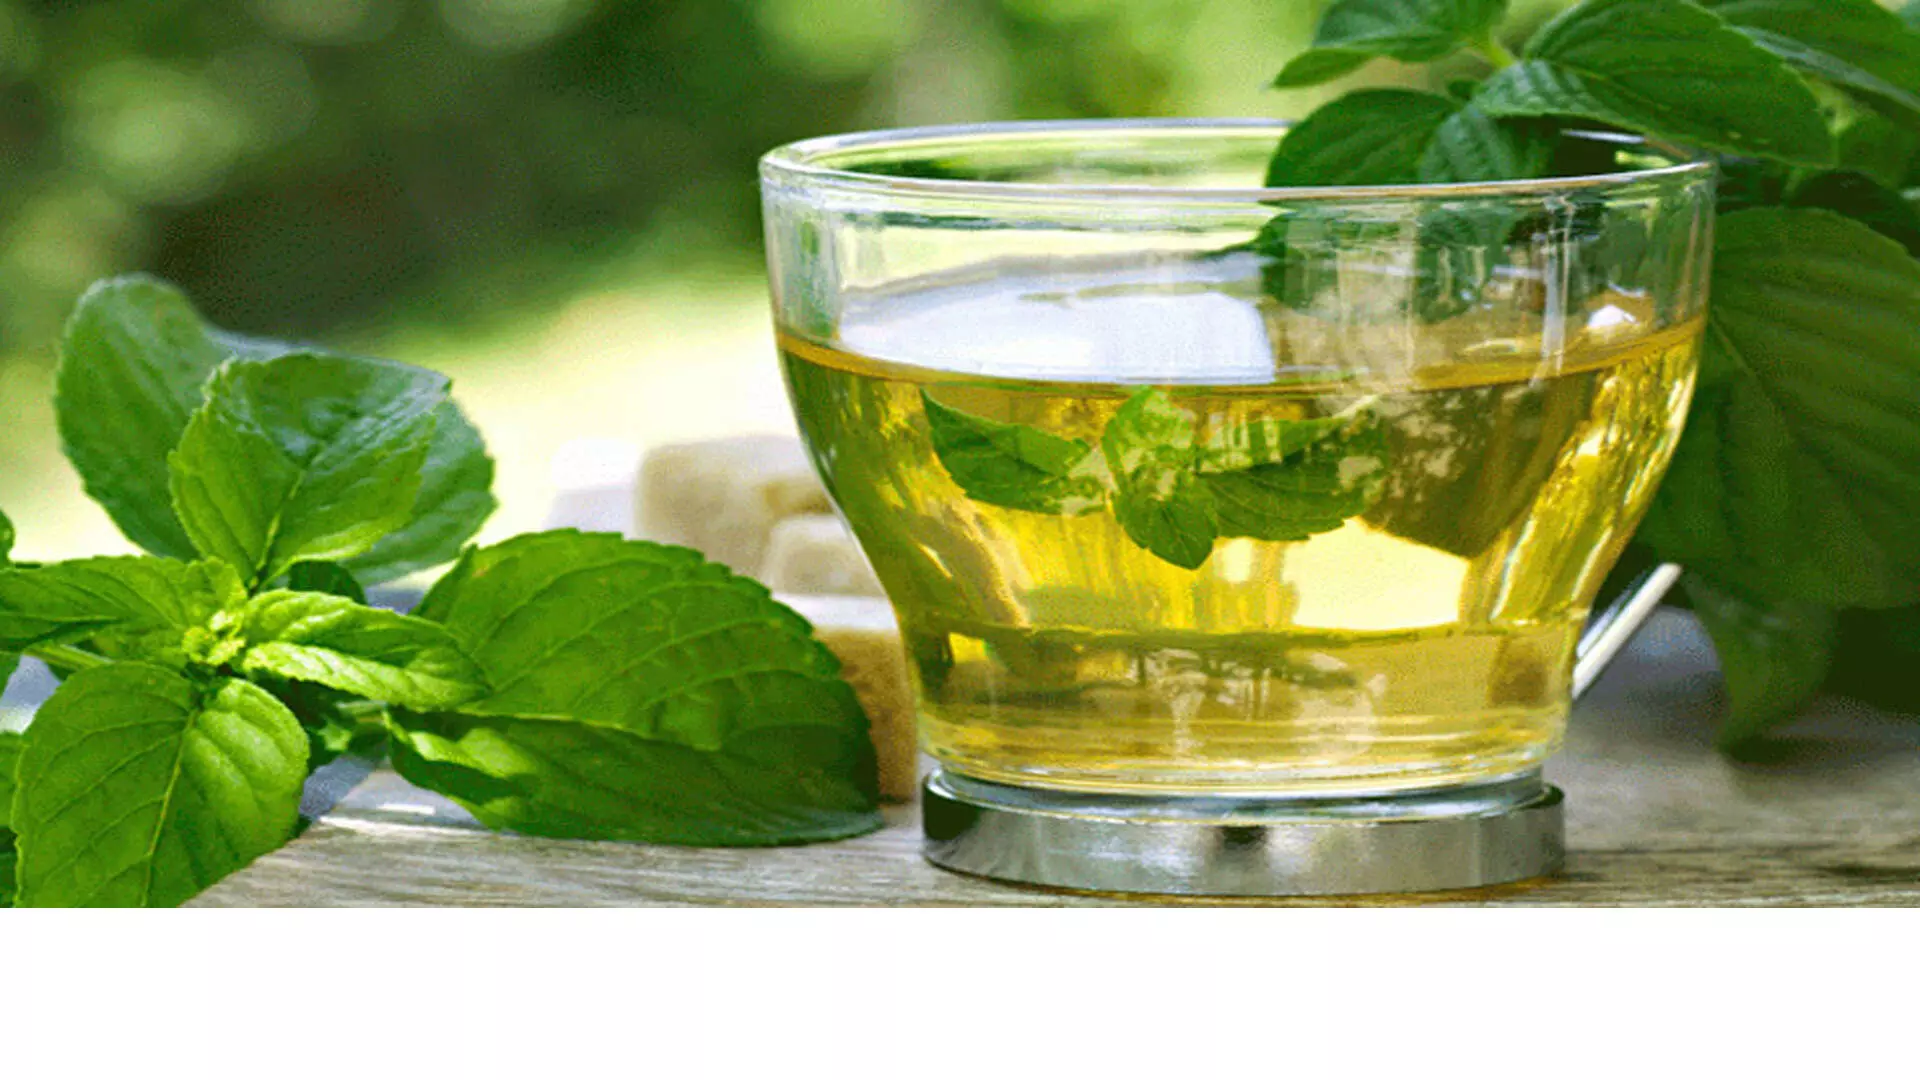 हर्बल चाय की चुस्की आपको तरोताजा कर देगी, आसान तरीकों से घर पर बनाएं